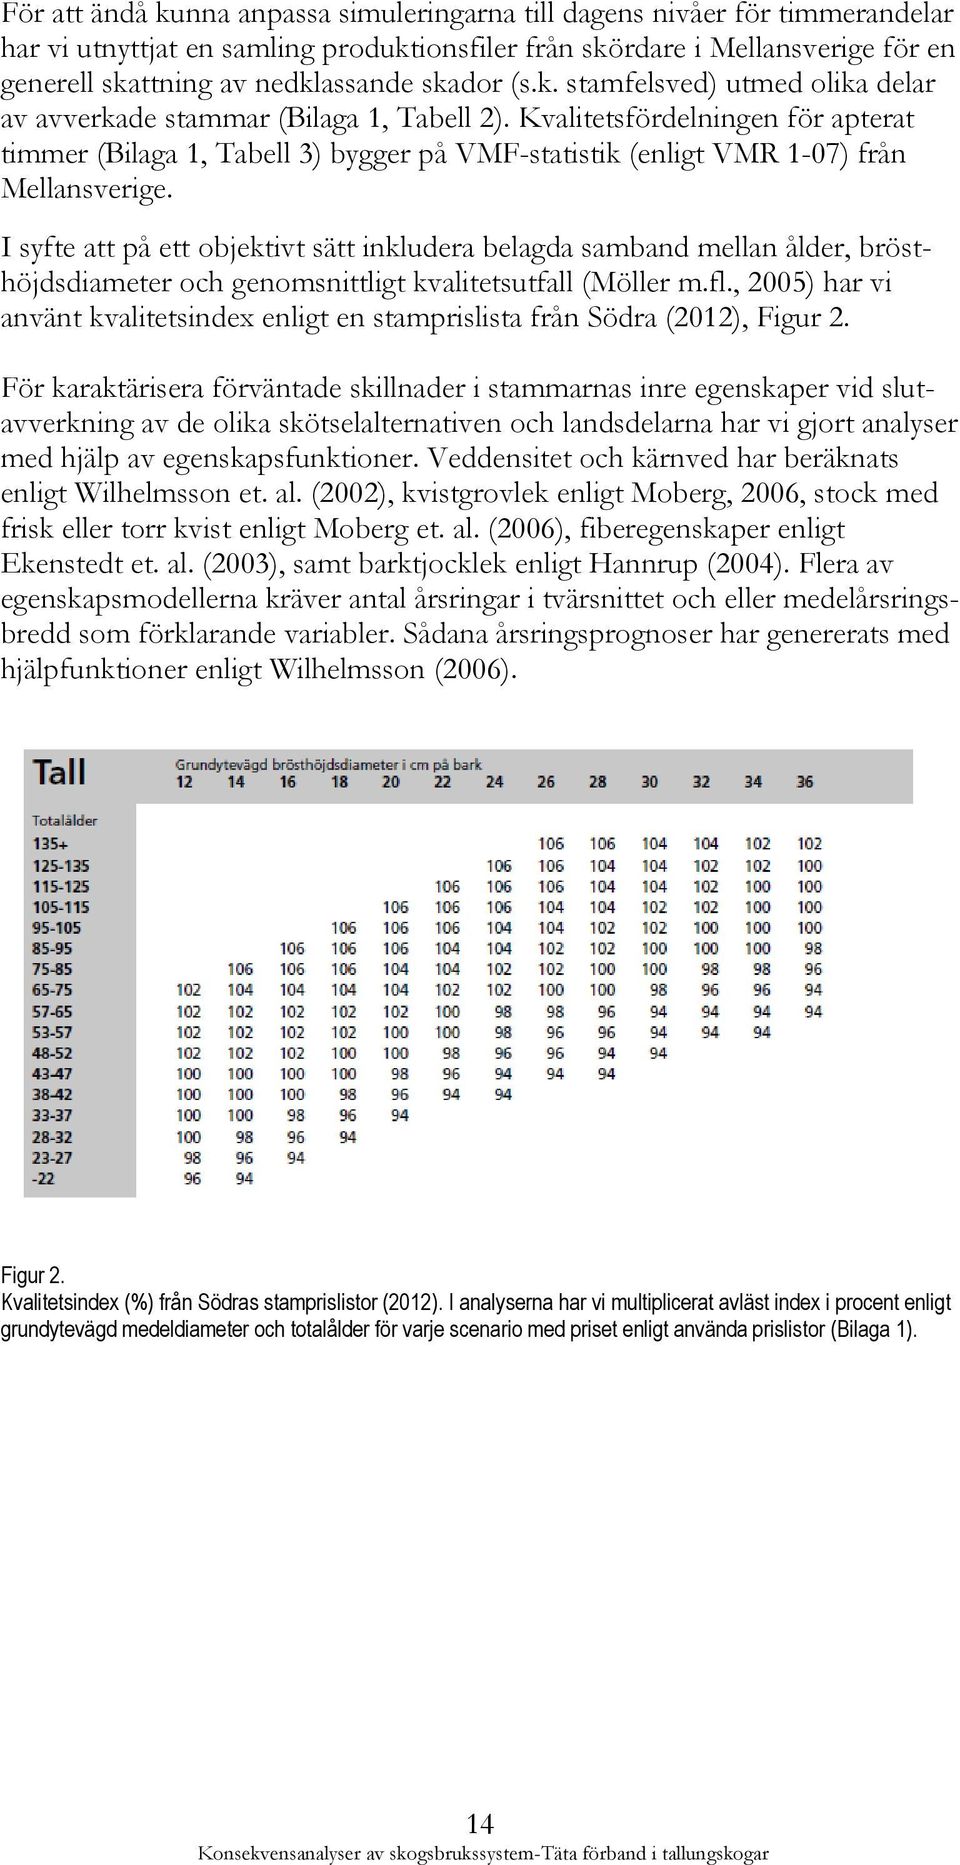 Kvalitetsfördelningen för apterat timmer (Bilaga 1, Tabell 3) bygger på VMF-statistik (enligt VMR 1-07) från Mellansverige.